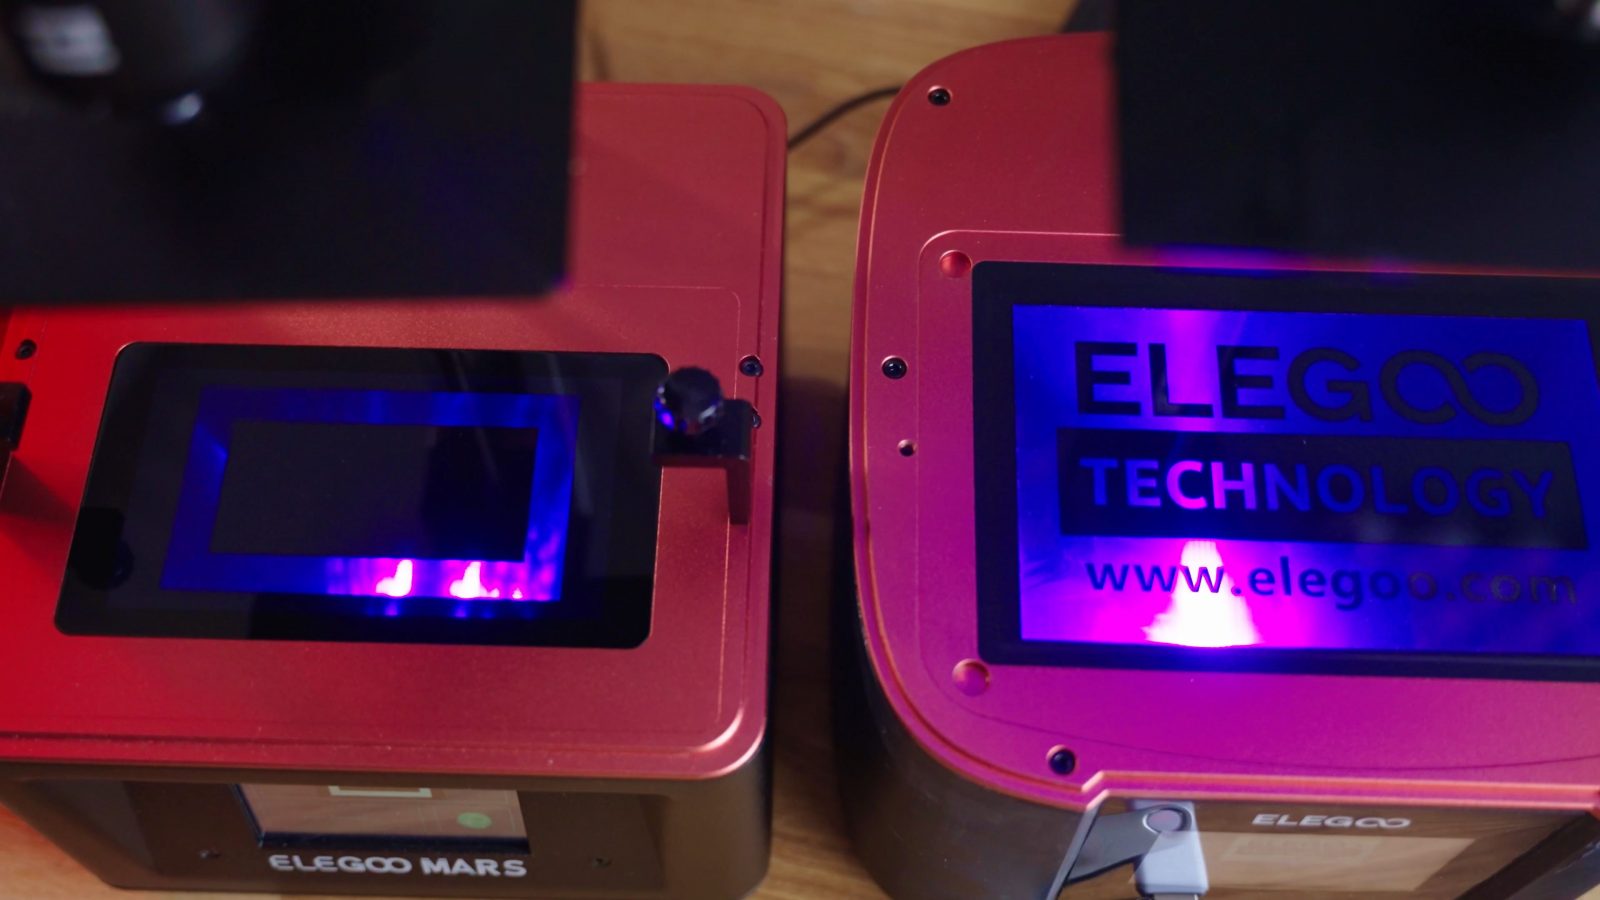 Elegoo Mars 3 4K Resin Printer Review! 